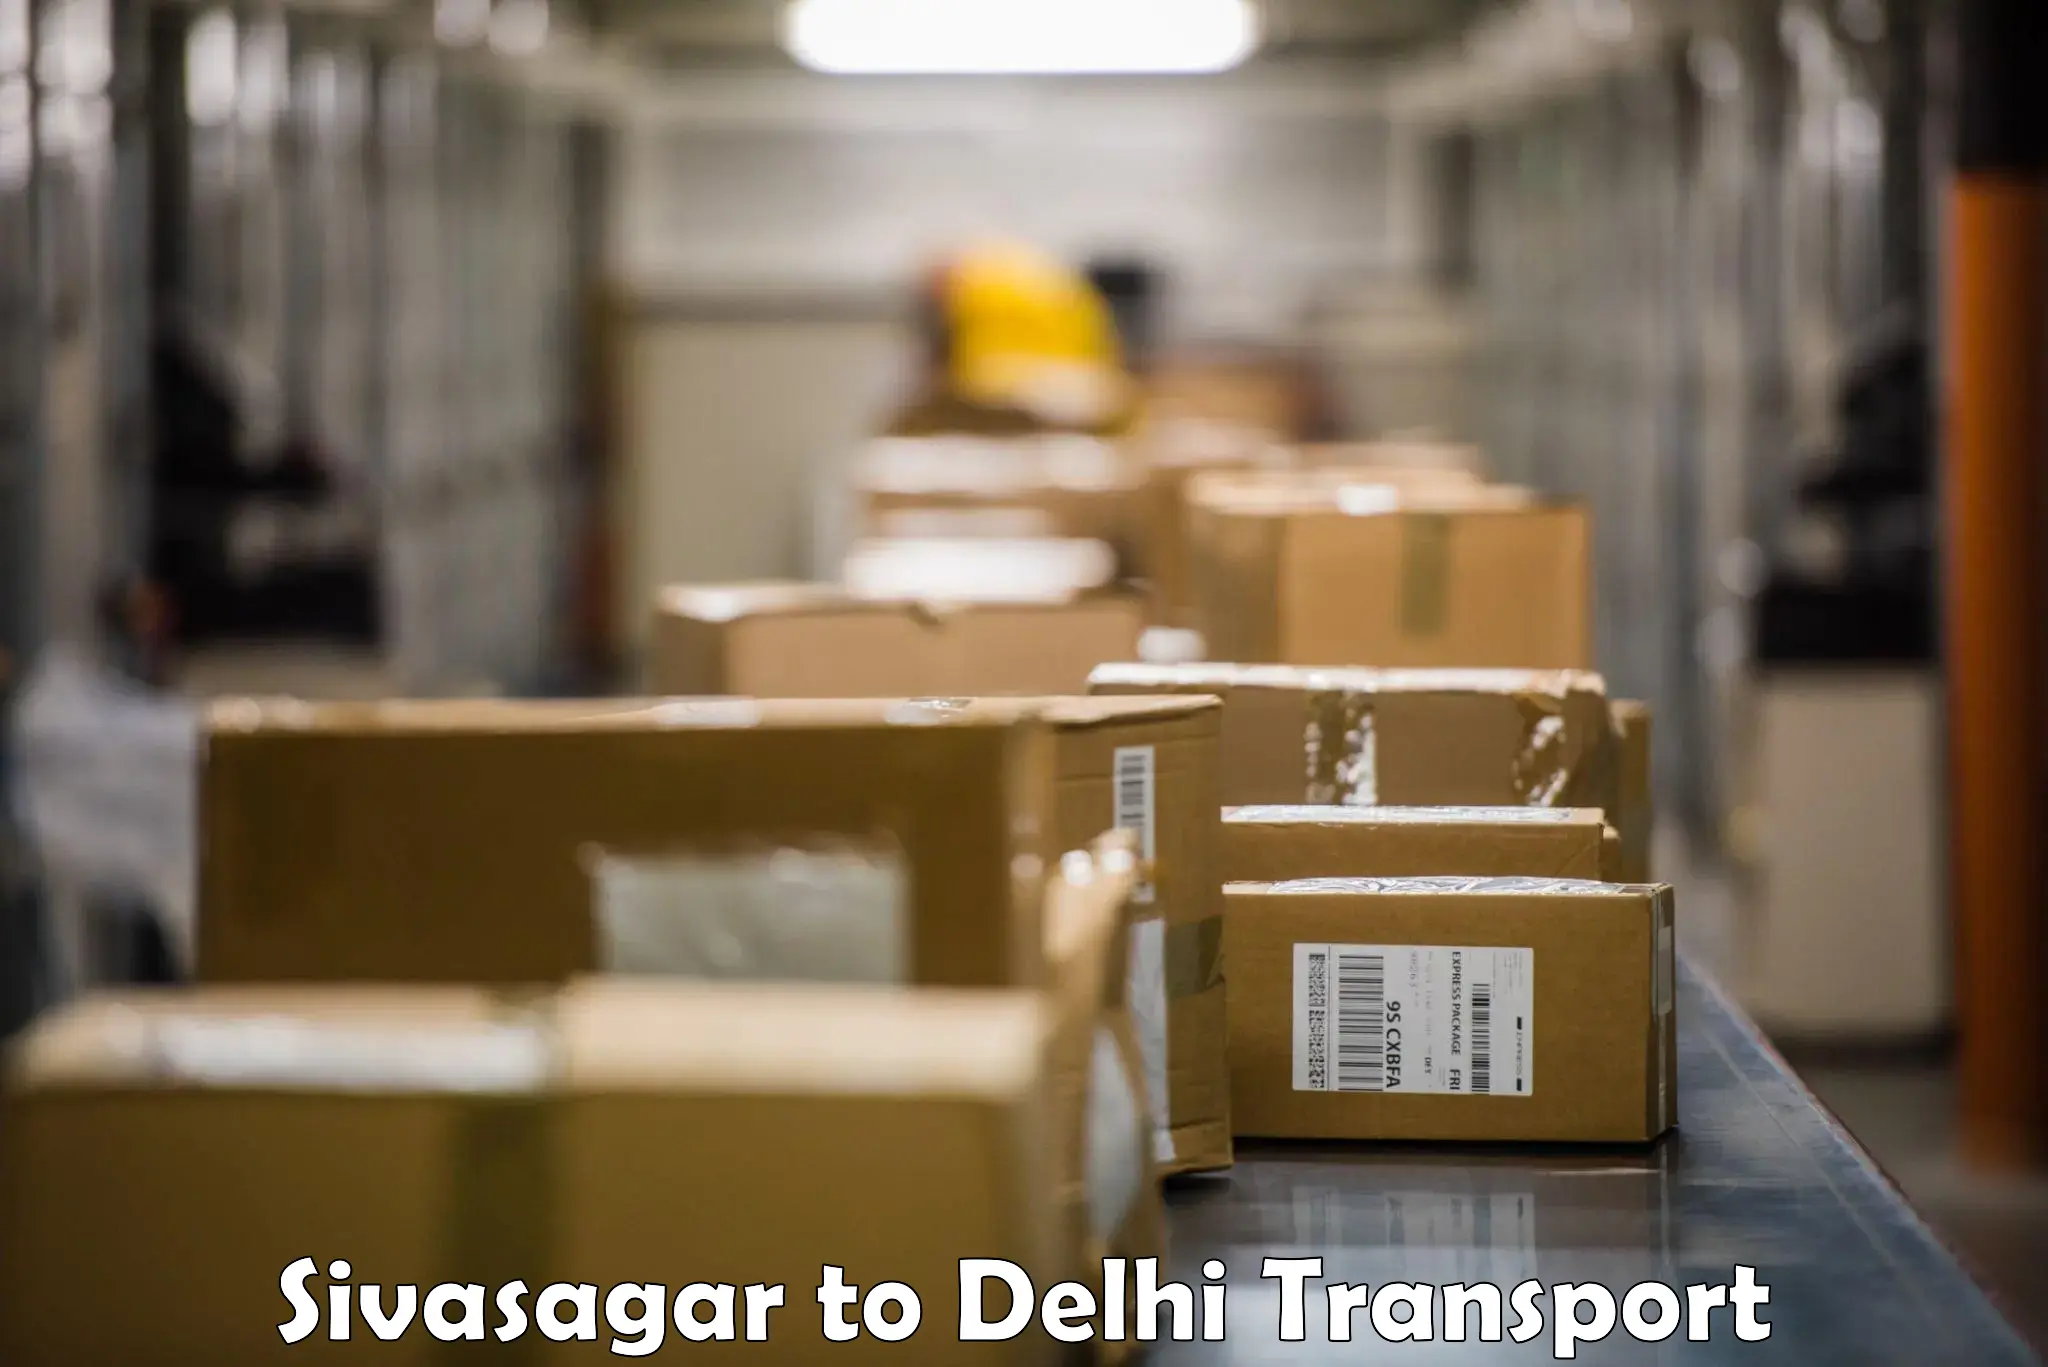 Shipping partner Sivasagar to East Delhi